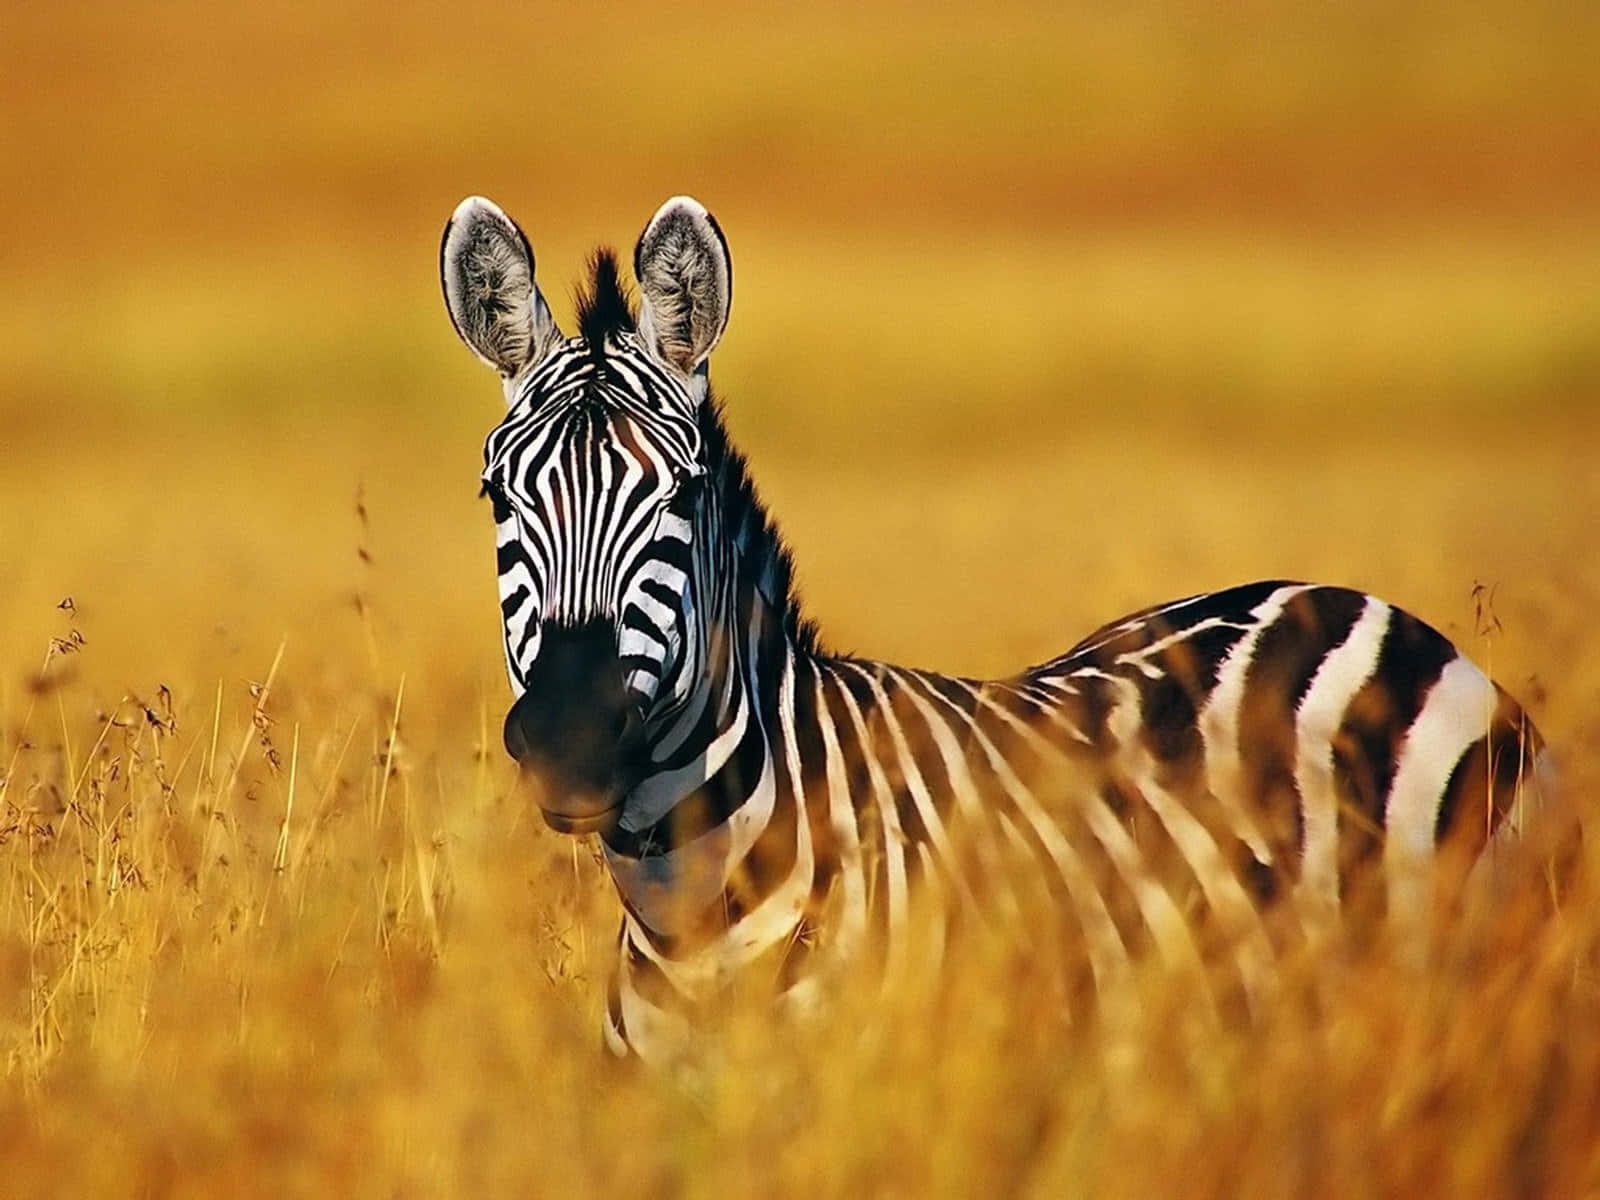 Beautiful Baby Zebra Enjoying the Serengeti